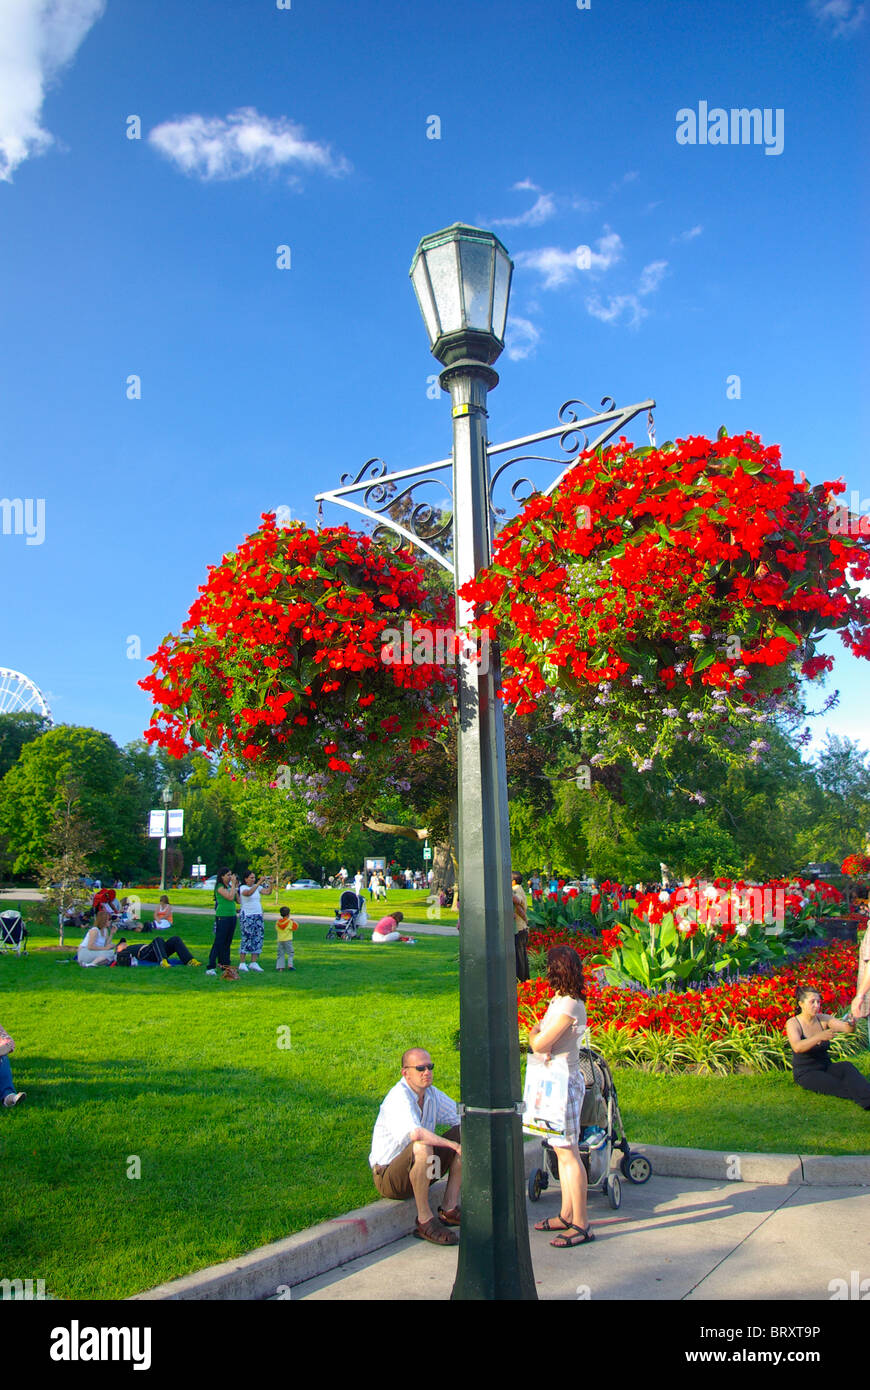 Niagara Falls Kanada. Urlaub paar in der Nähe von Blume dekoriert Lampe Pfosten mit grünem Rasen und Picknicker im Hintergrund Stockfoto